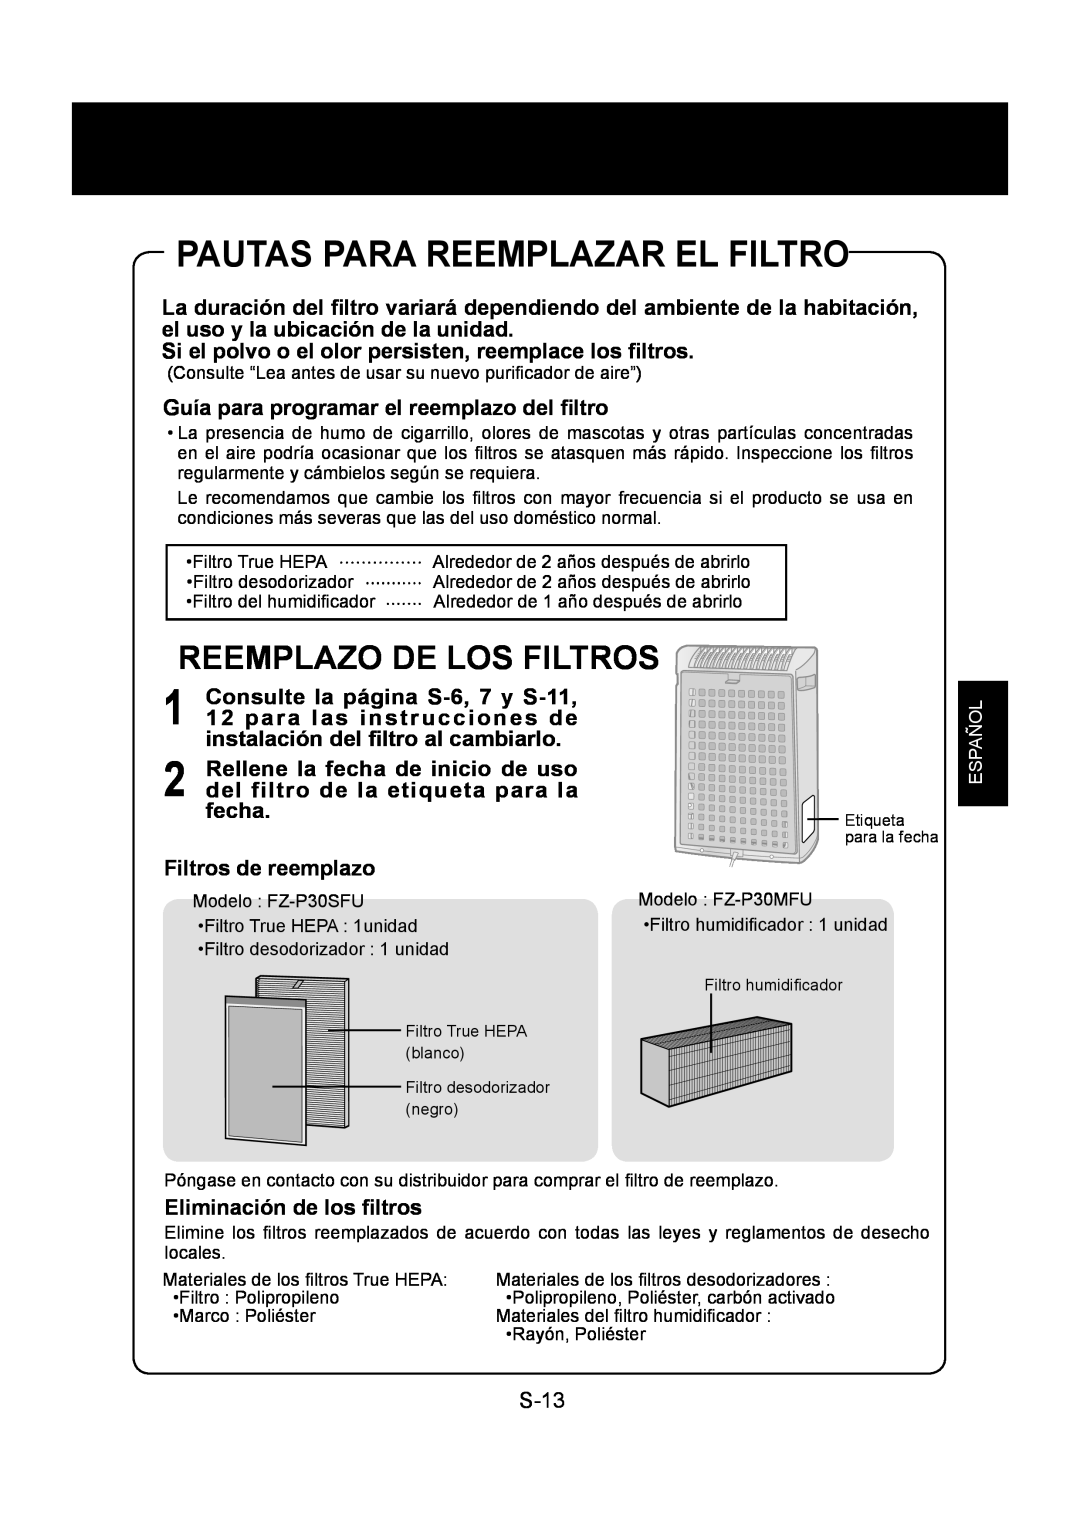 Sharp KC-830U operation manual Pautas Para Reemplazar El Filtro, Reemplazo De Los Filtros 